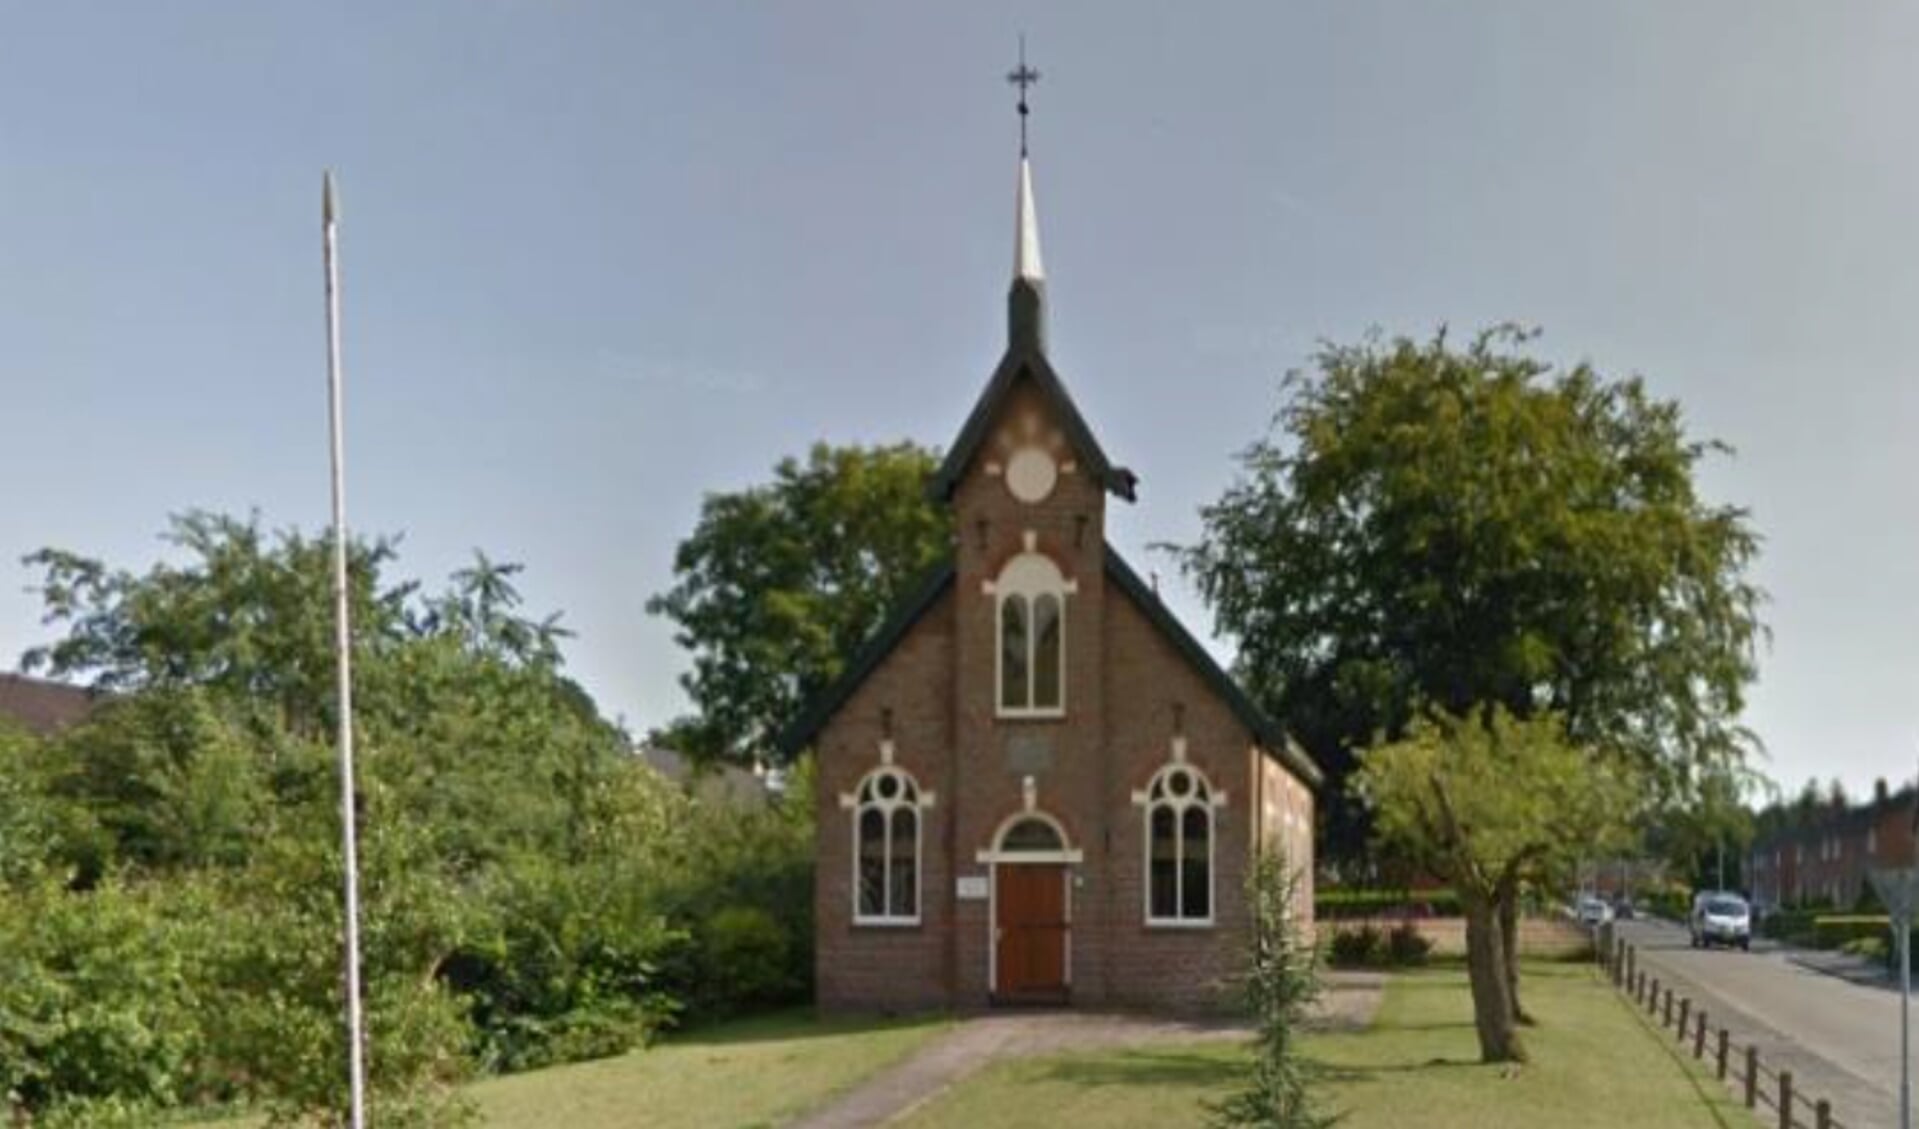 Doopsgezinde kerk in De Westereen.